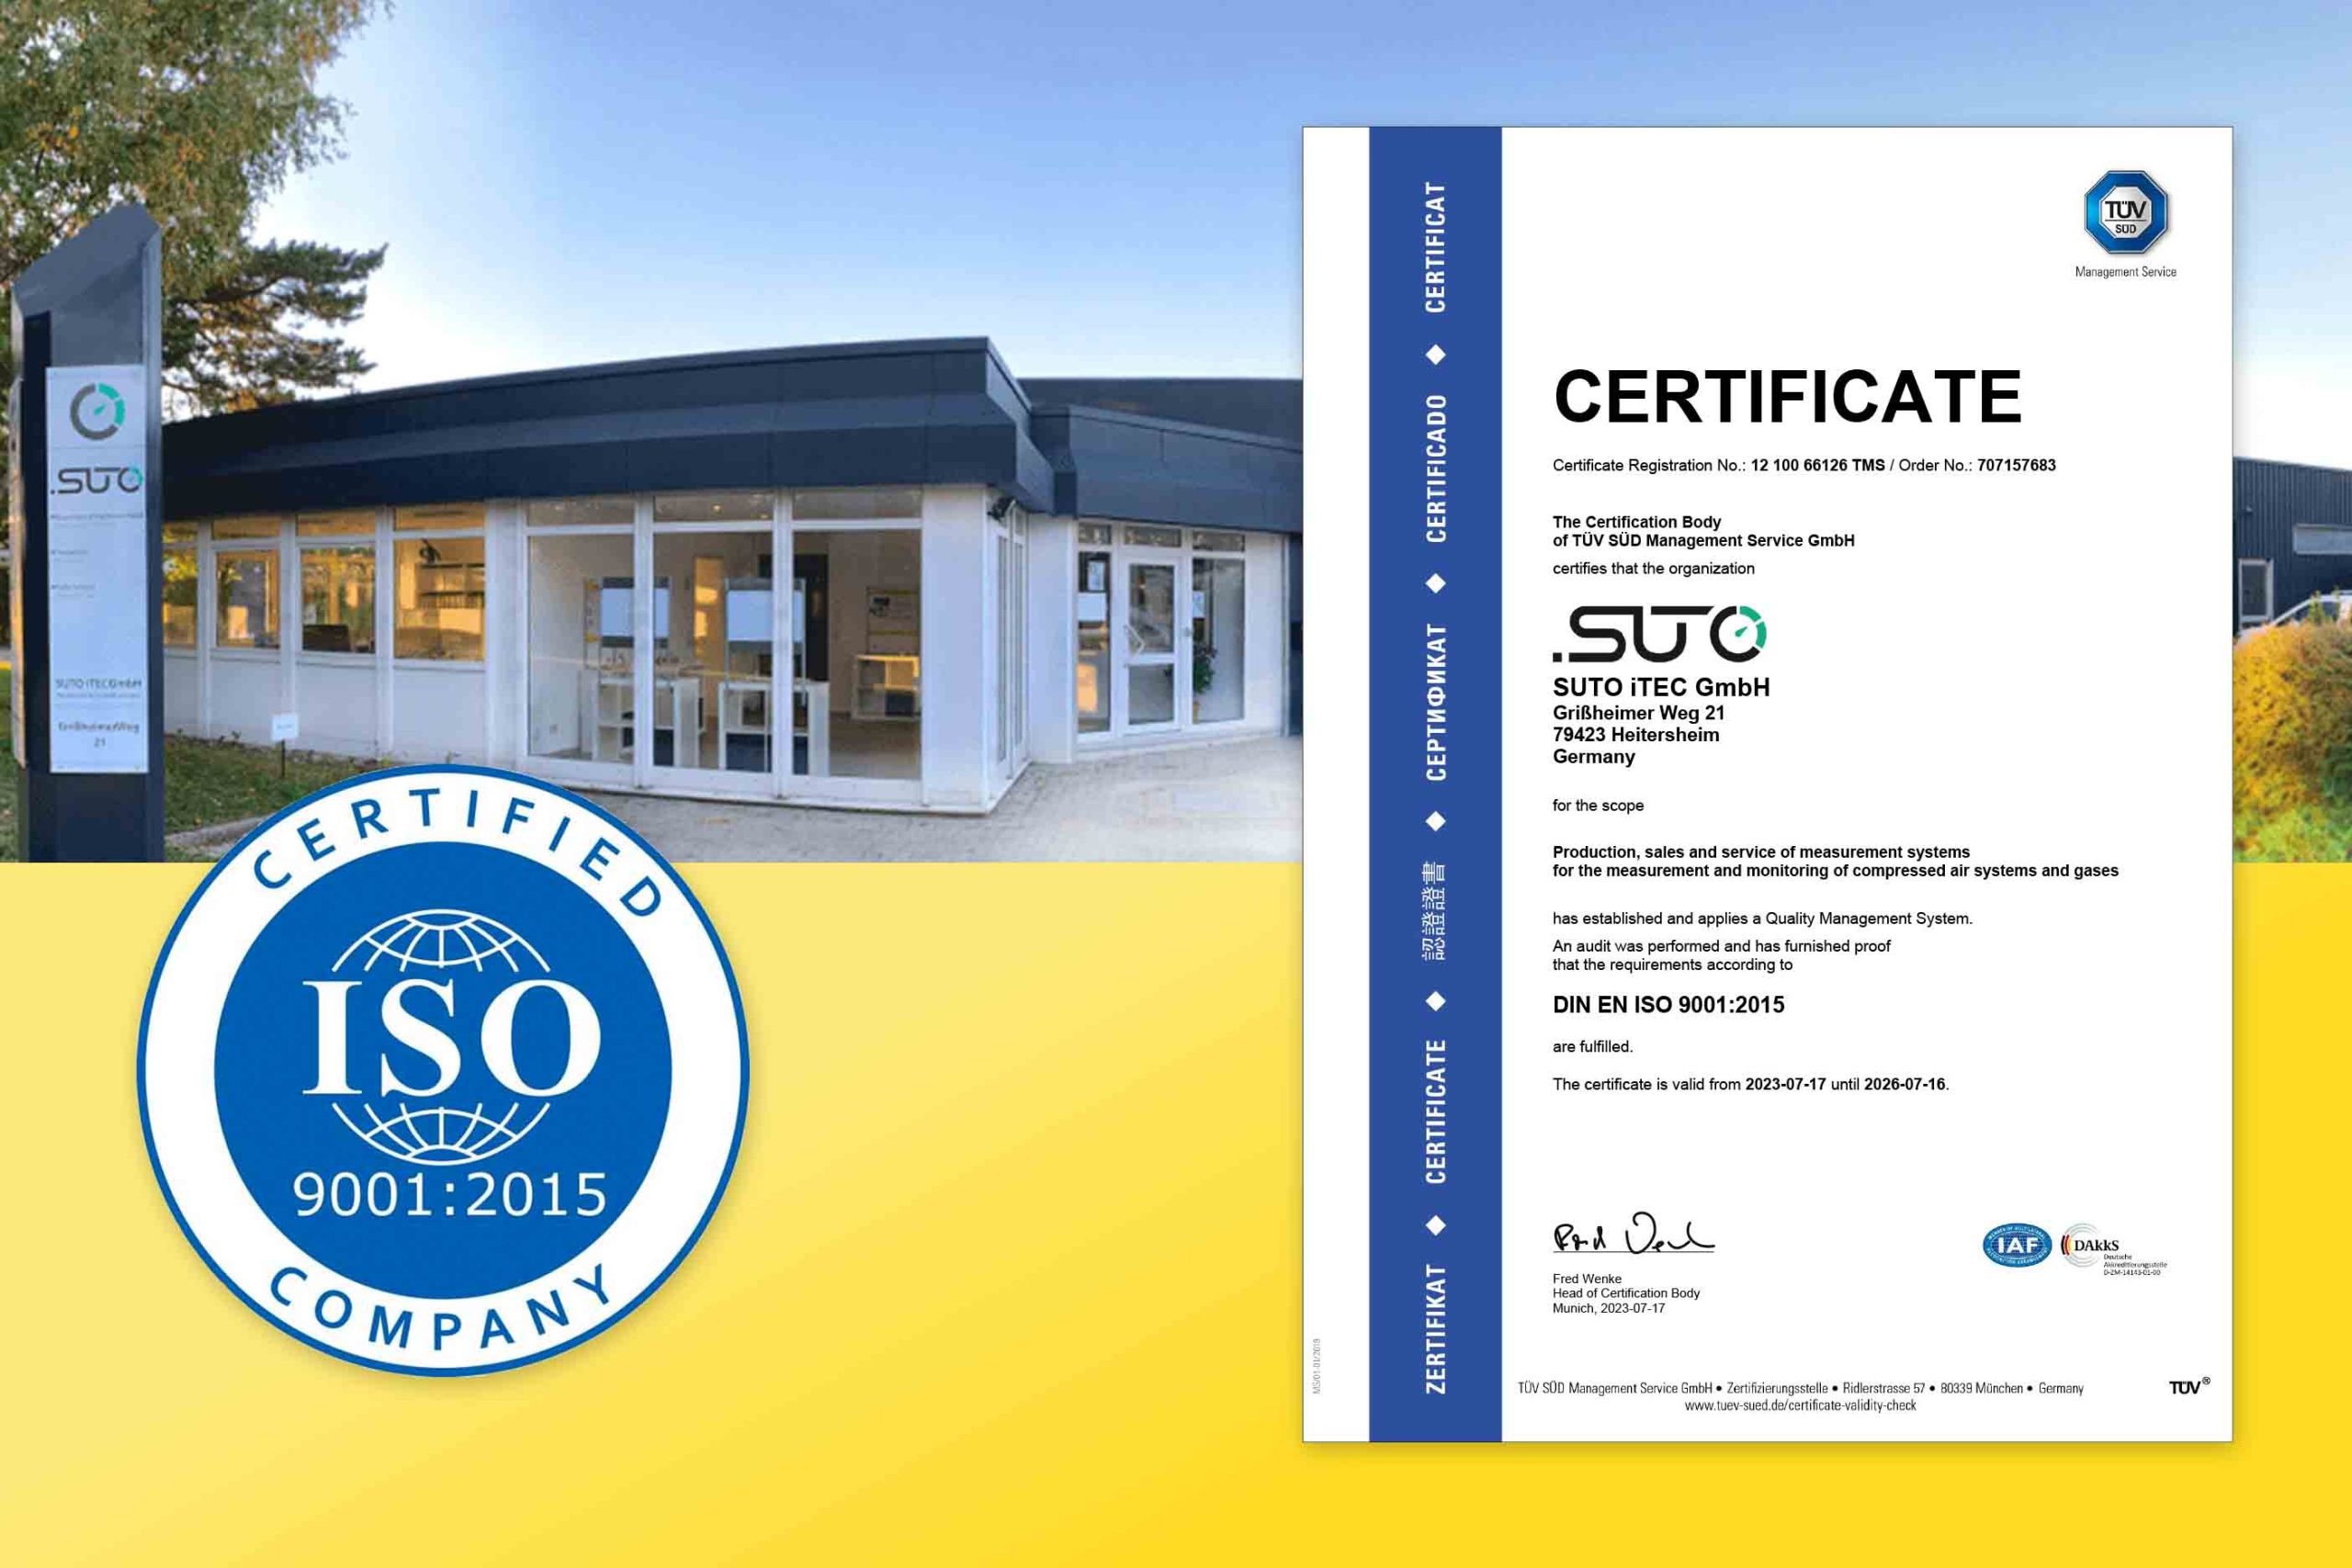 Siedziba SUTO iTEC w Niemczech otrzymuje certyfikat ISO 9001:2015